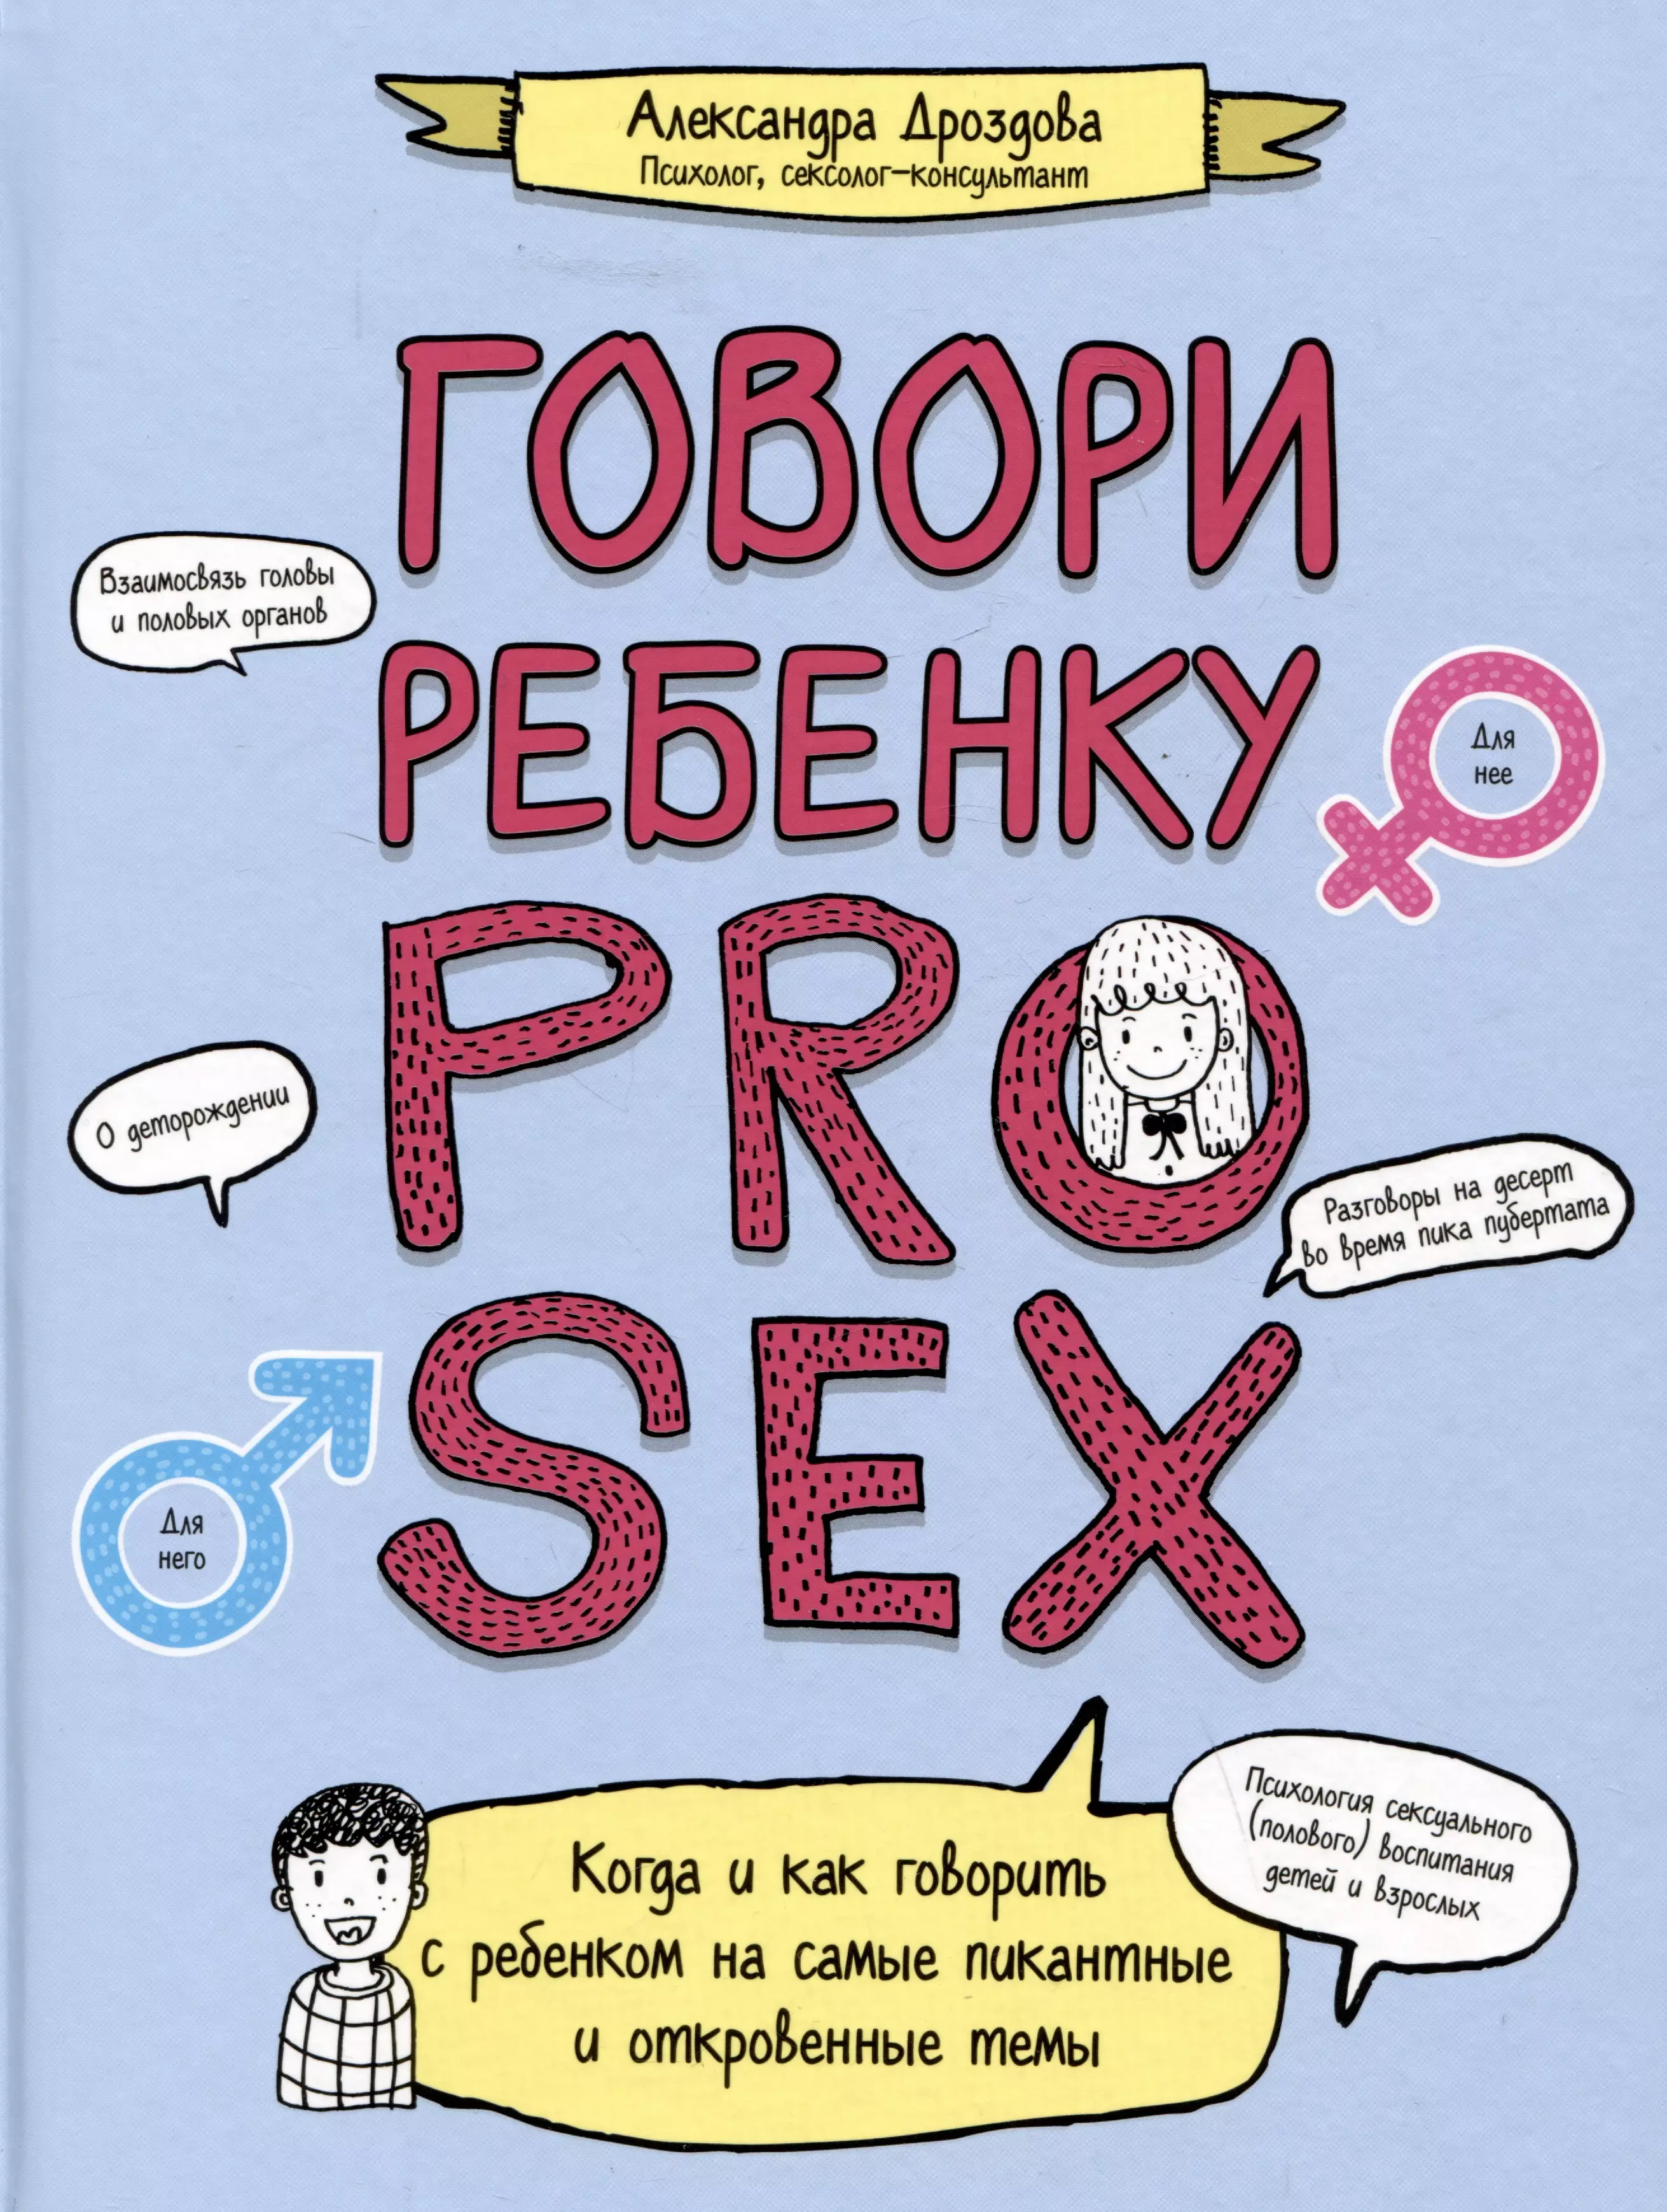 Дроздова А. А. Говори ребенку PRO SEX: когда и как говорить с ребенком на самые пикантные и откровенные темы